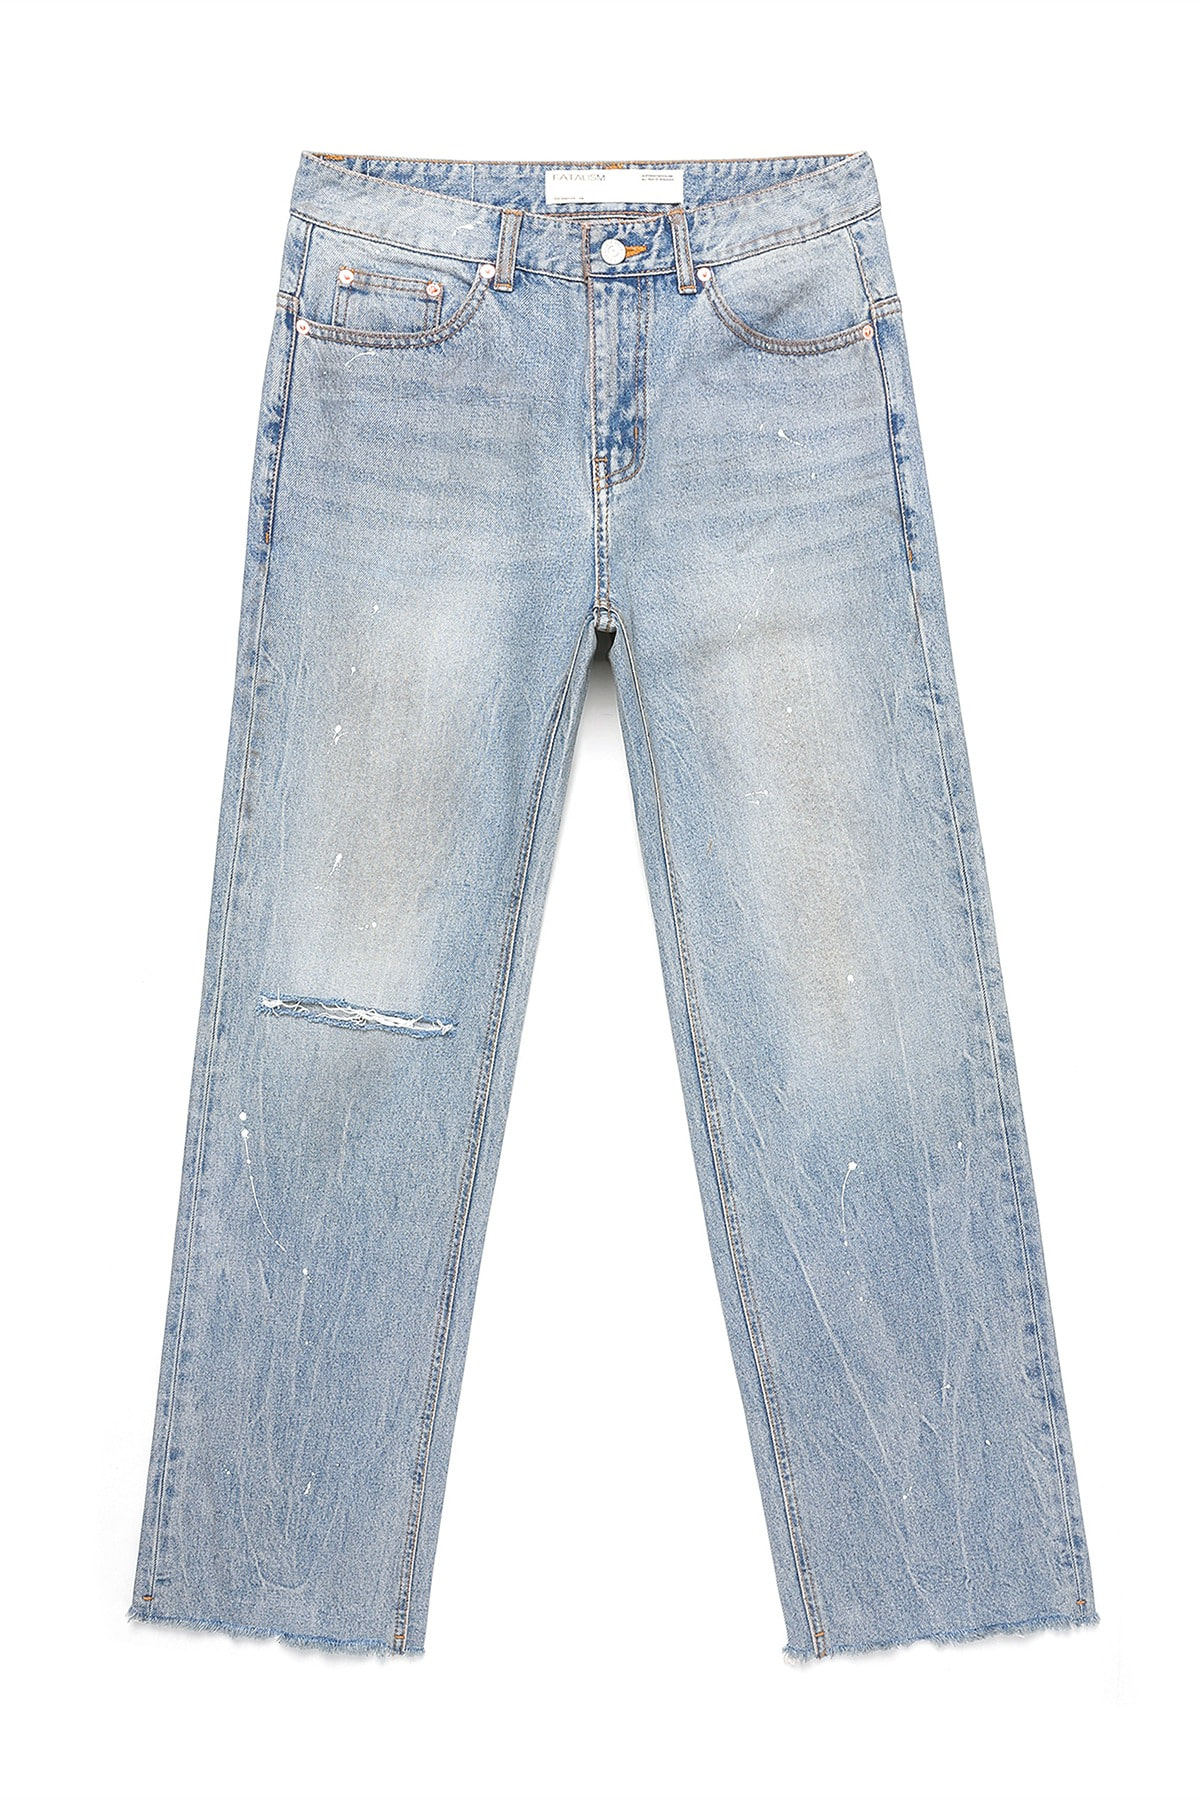 [8/16 예약발송] #0237 trabus paint jeans